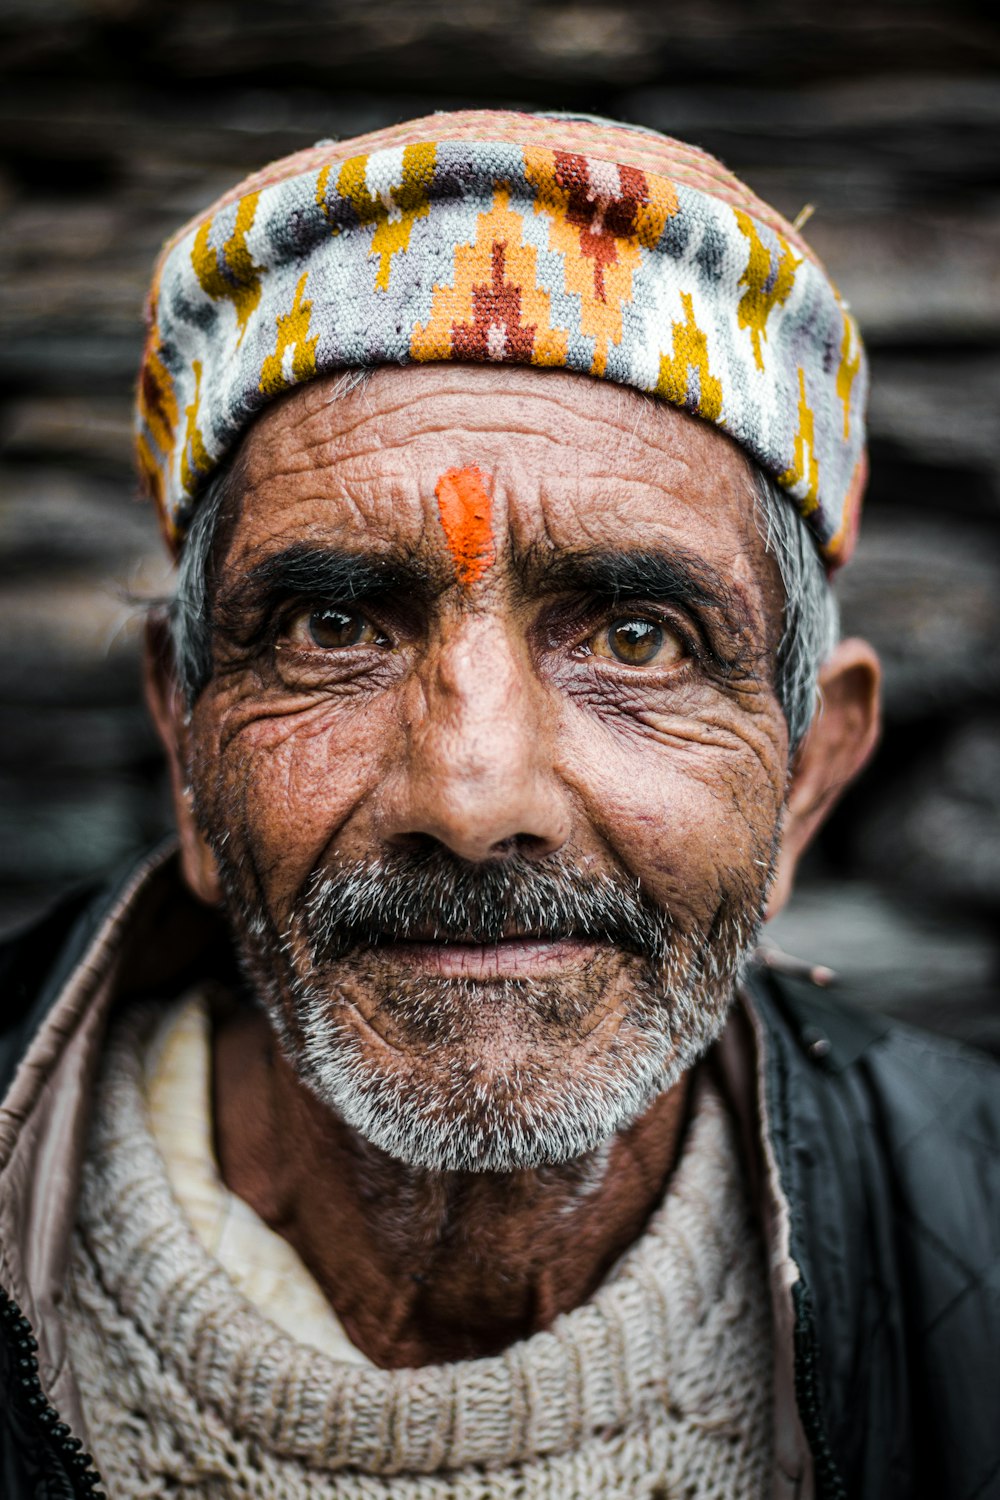 Un vecchio con un turbante colorato sulla testa